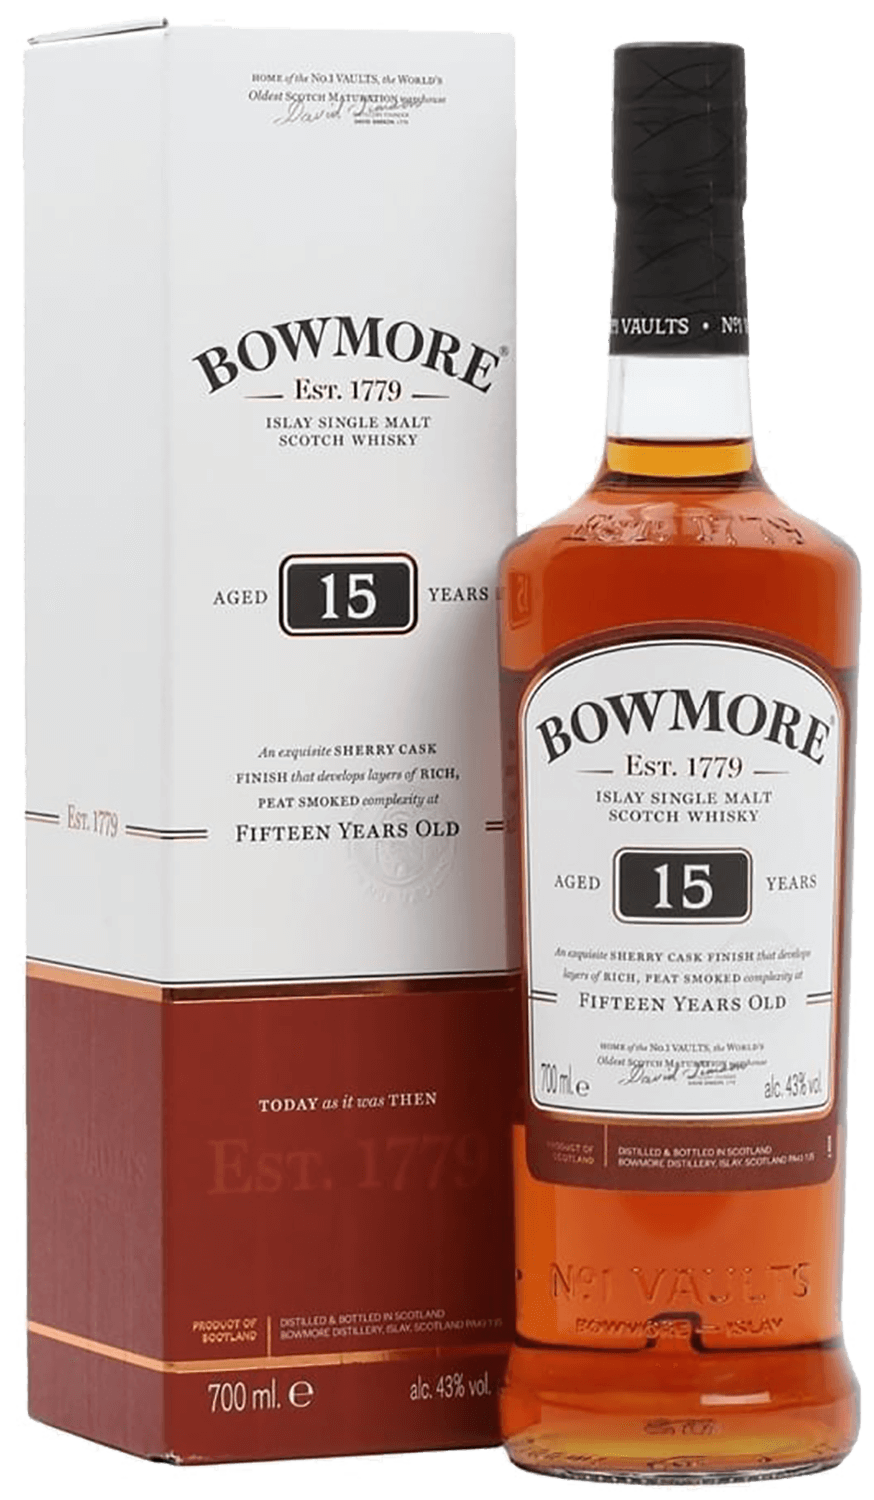 Bowmore 15 y.o. Islay single malt scotch whisky (gift box) bruichladdich islay barley single malt scotch whisky gift box